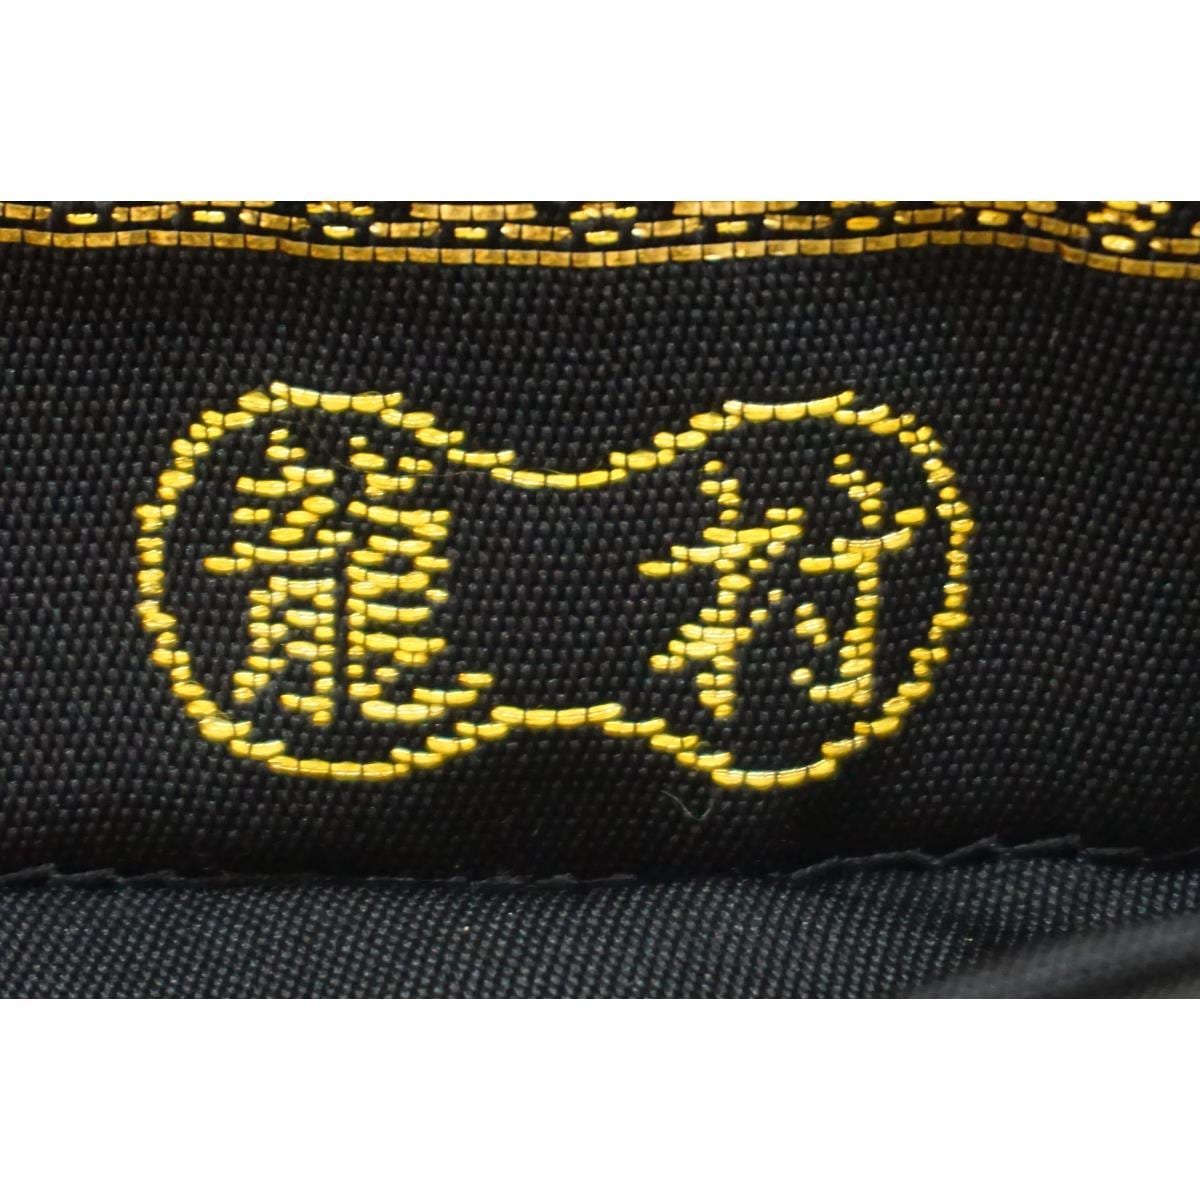 [Unused items] Fukurobi Tatshumura Art Textile Western dance pattern